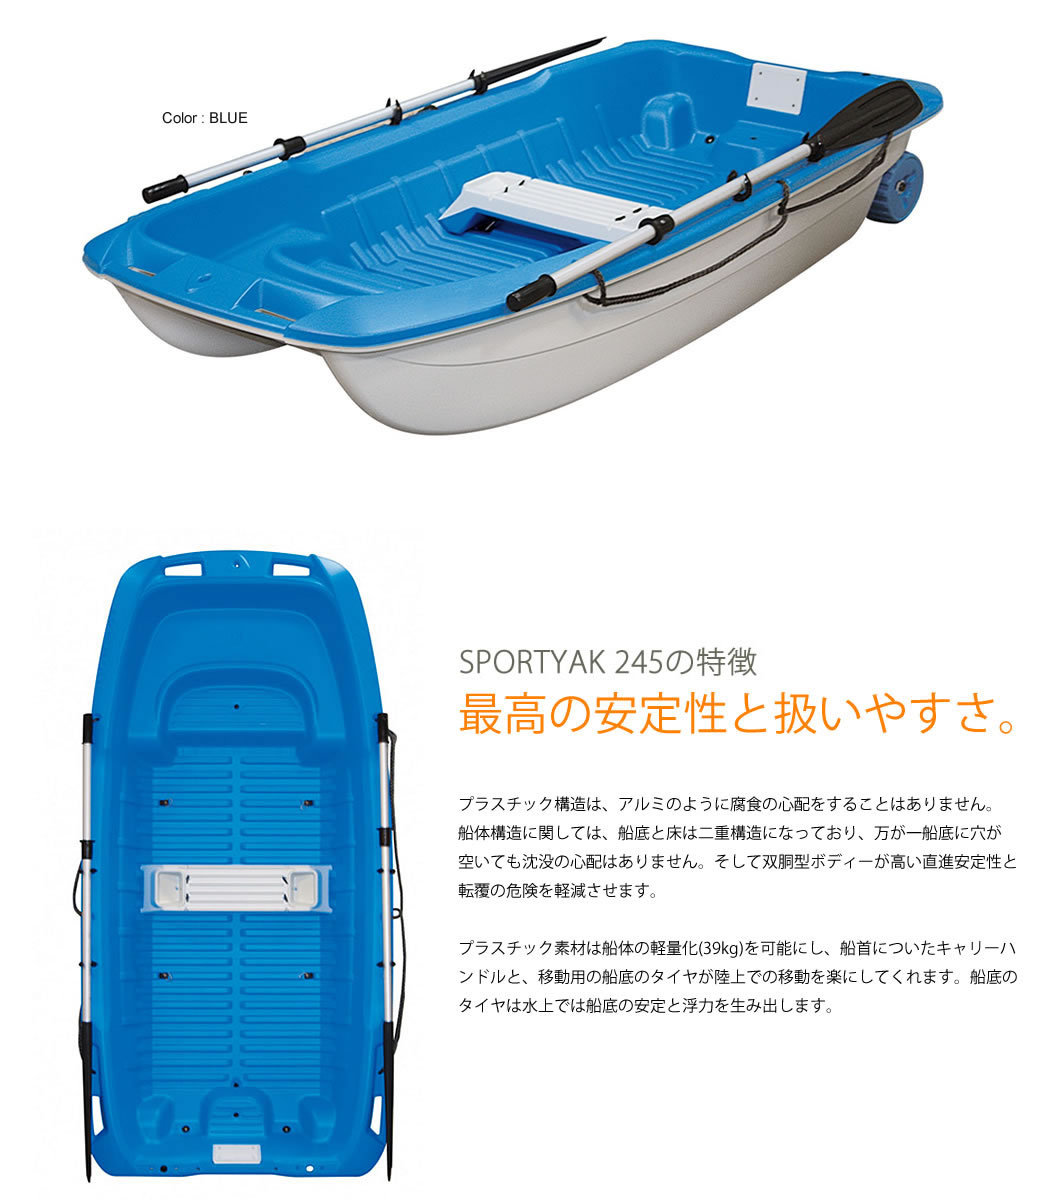 3人乗りボート SPORTYAK245 (Blue White) スポーツヤック BOAT レジャーボート バス釣り ボート ドーリー 2馬力  免許不要 BICSPORT 旧名 BIC245 マリンスポーツ